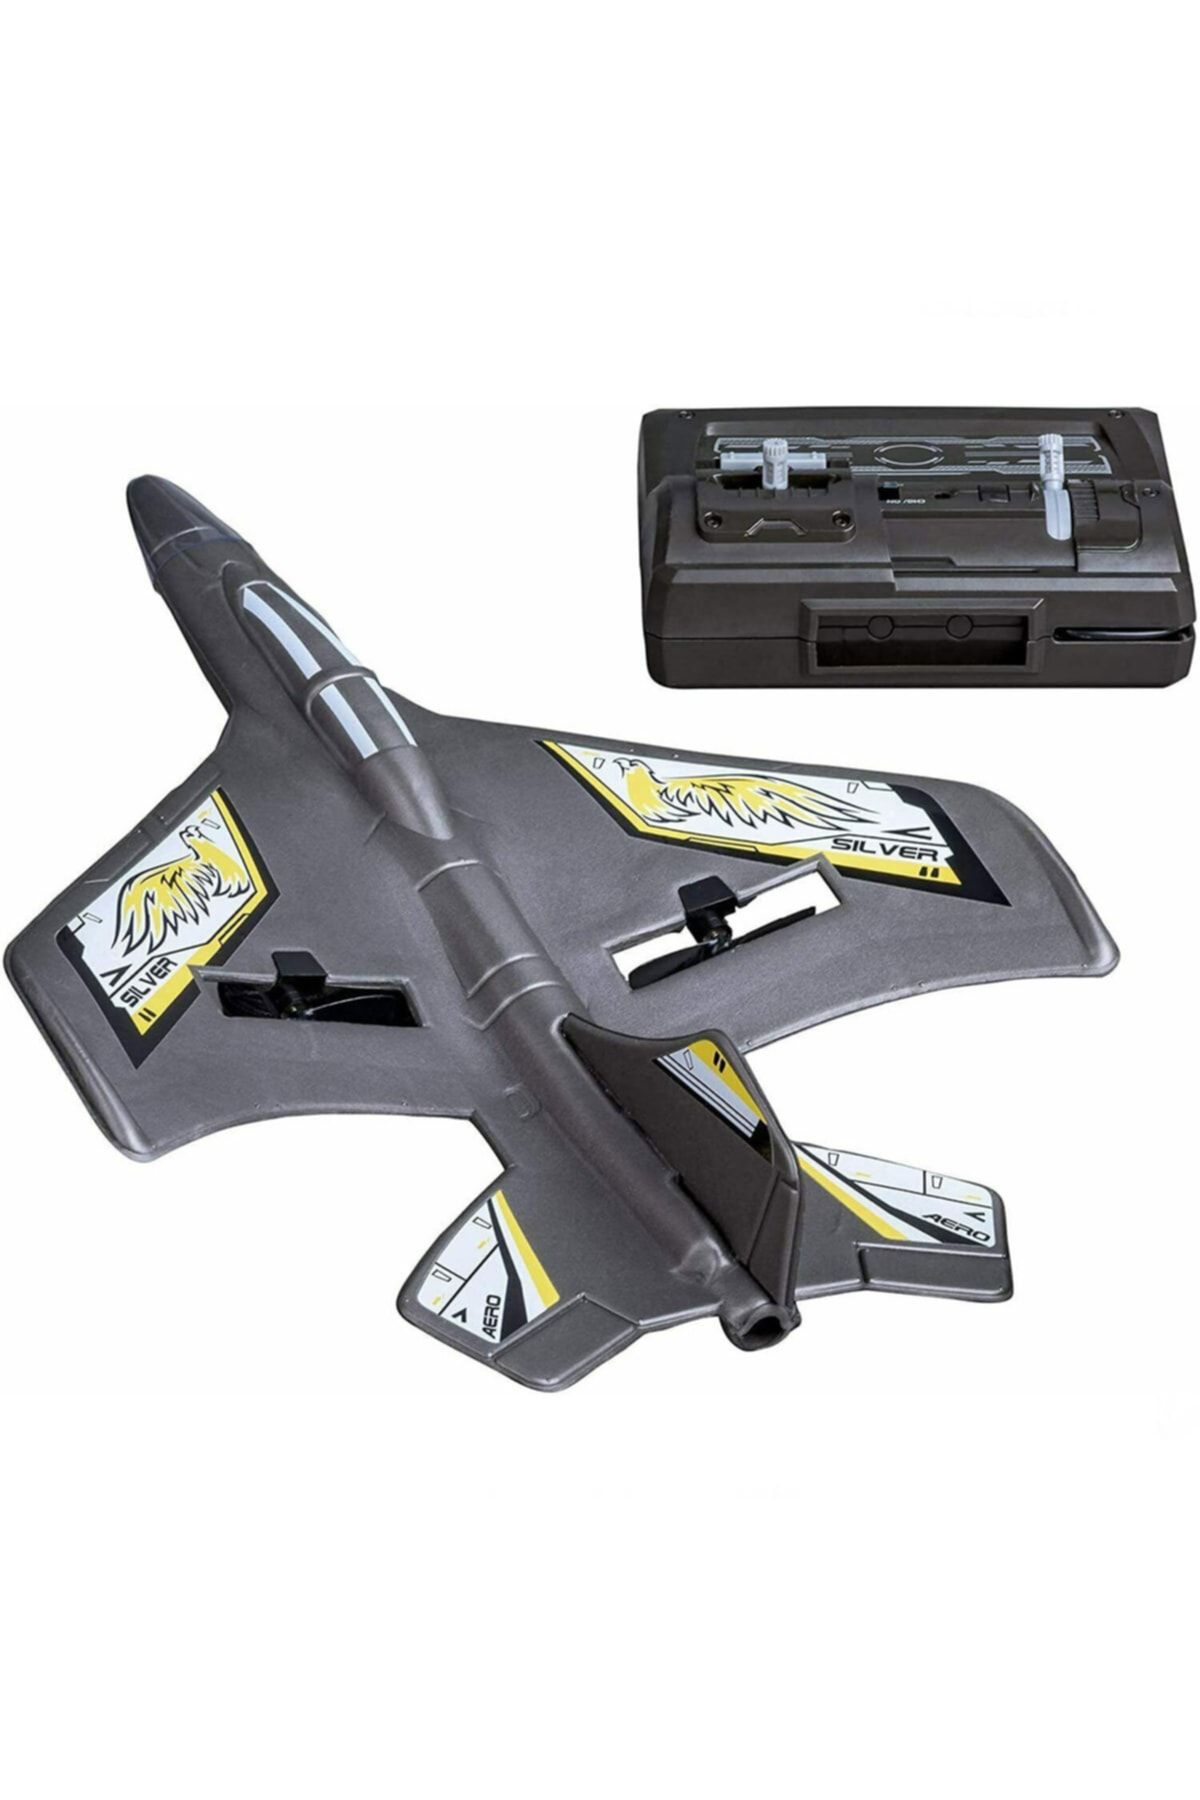 Silverlit Flybotic X-twin Evo Uzaktan Kumandalı Uçak